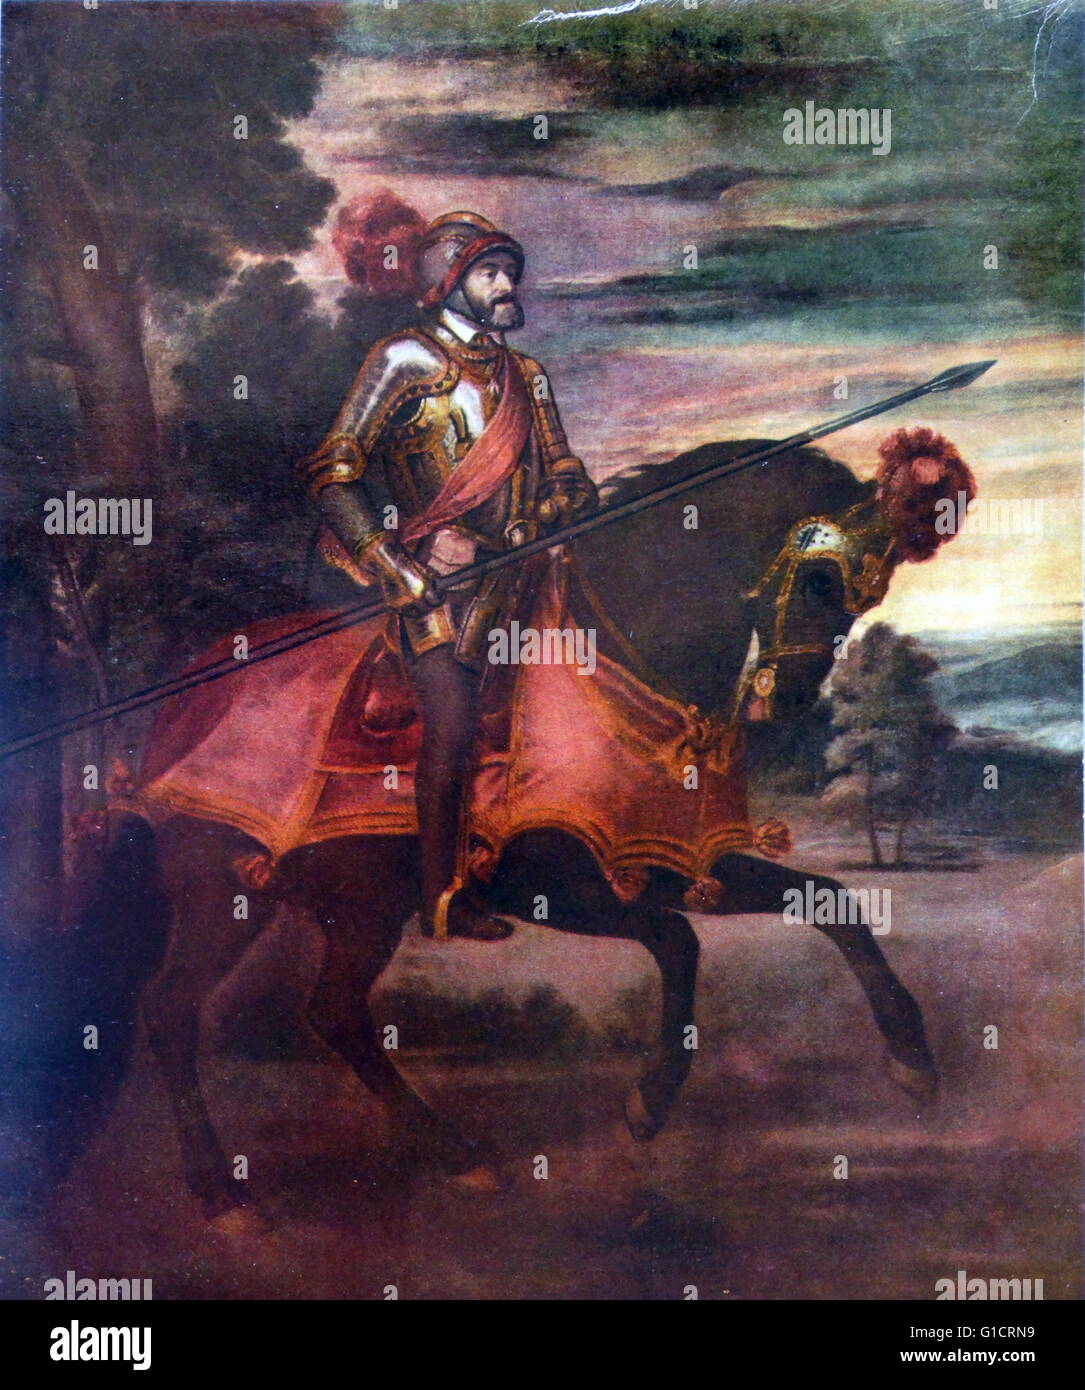 Charles V à cheval à Mühlberg. Titien. 1548. Charles V, empereur romain germanique (1500-1558) ; également Carlos I d'Espagne Banque D'Images